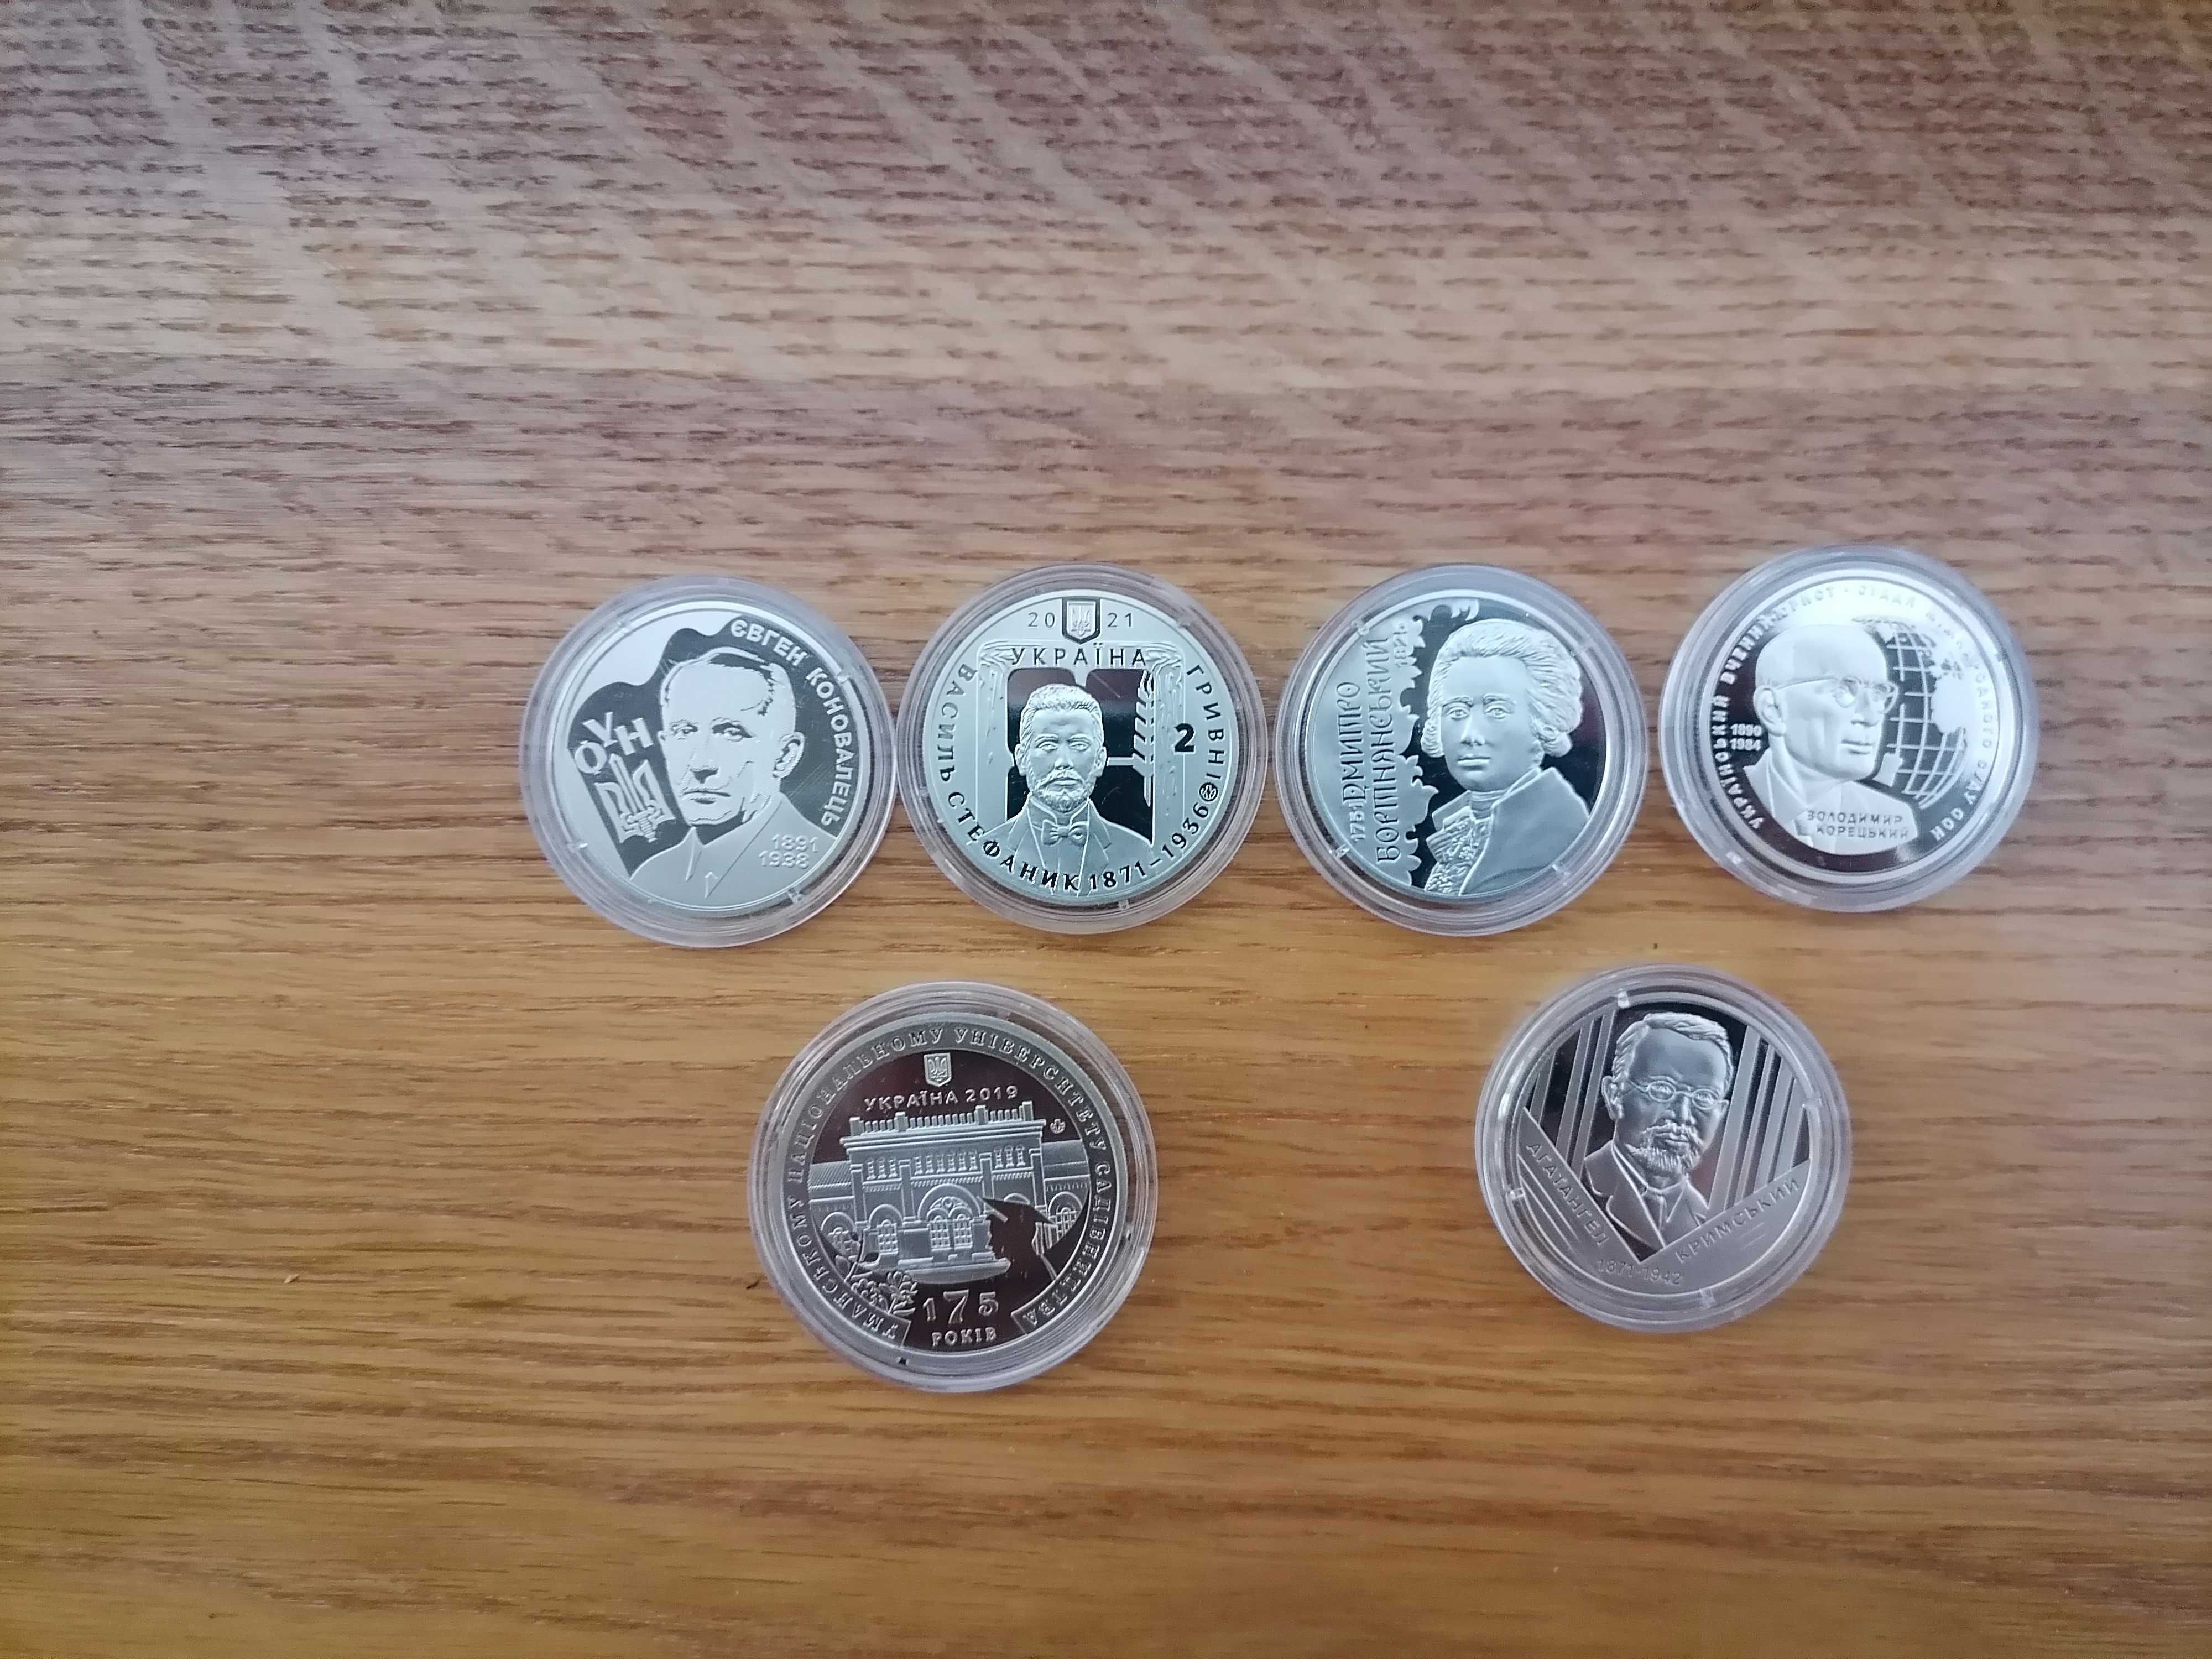 УКРАЇНСЬКИЙ борщ+Сміливість бути UA 2 Монети 5 грн + ін.монети в описі